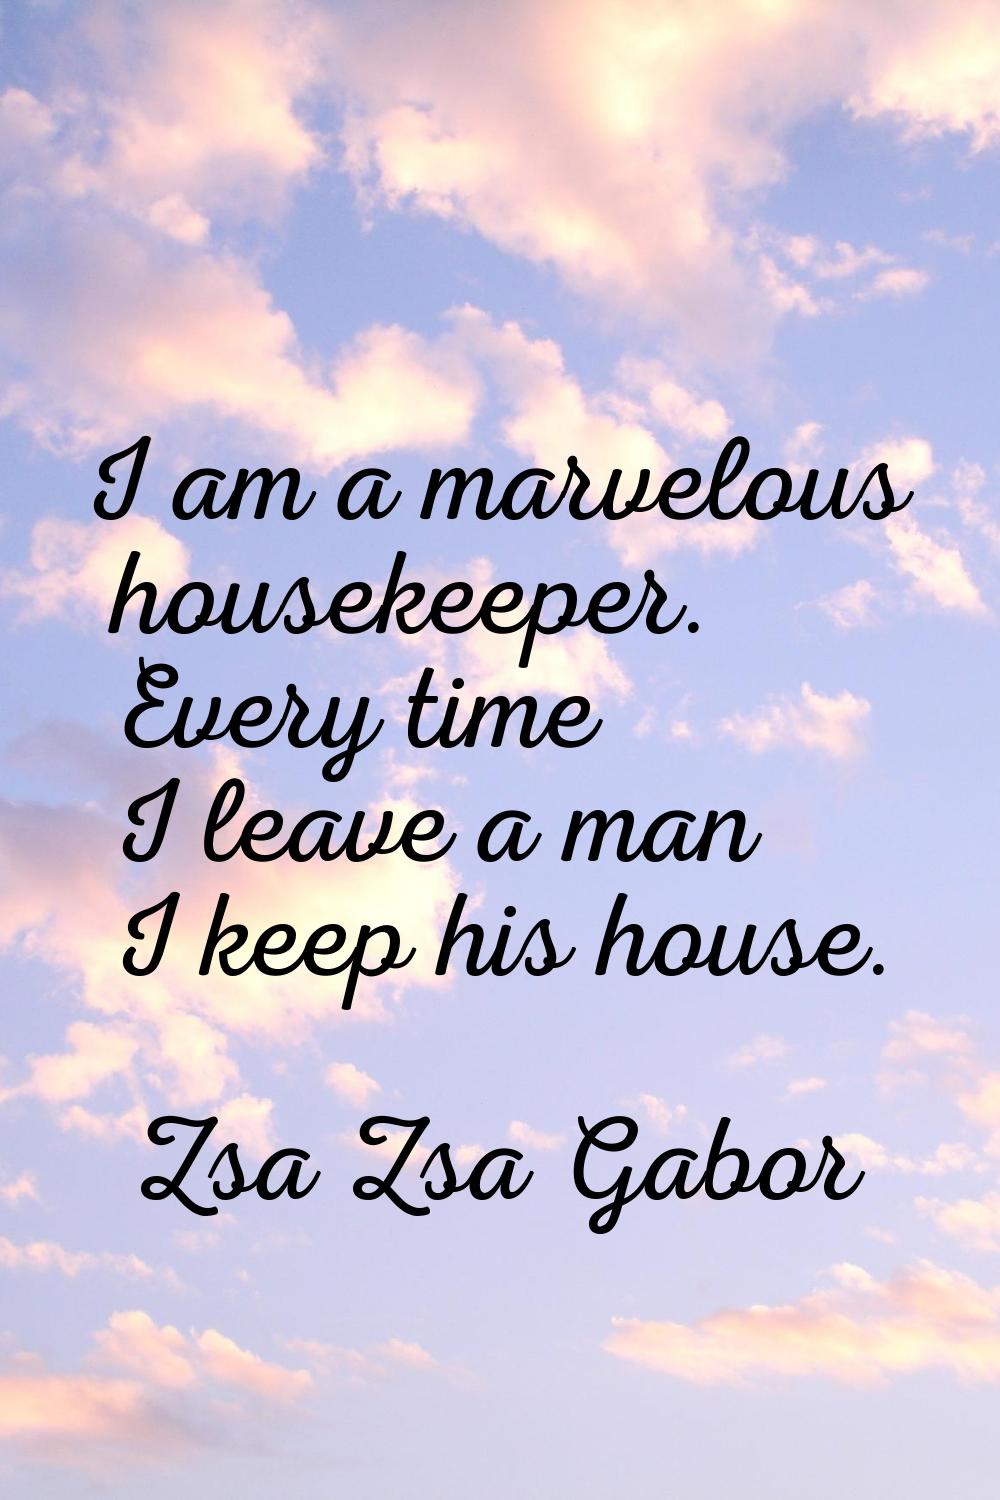 I am a marvelous housekeeper. Every time I leave a man I keep his house.